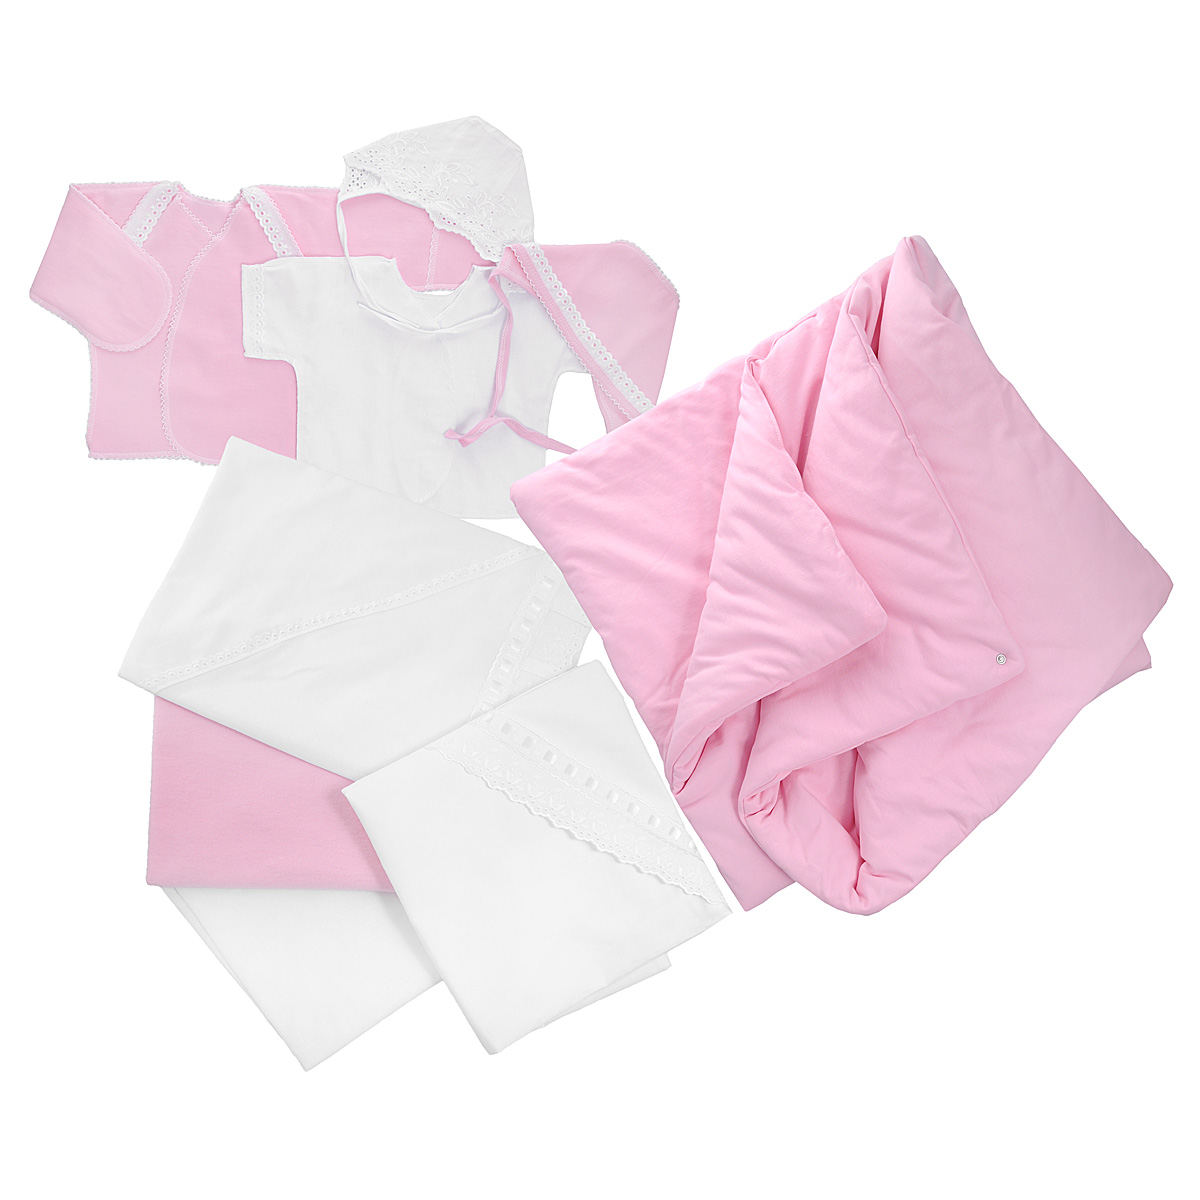 Комплект для новорожденного Трон-Плюс, 9 предметов, цвет: белый, розовый. 3476. Размер 62, 3 месяца